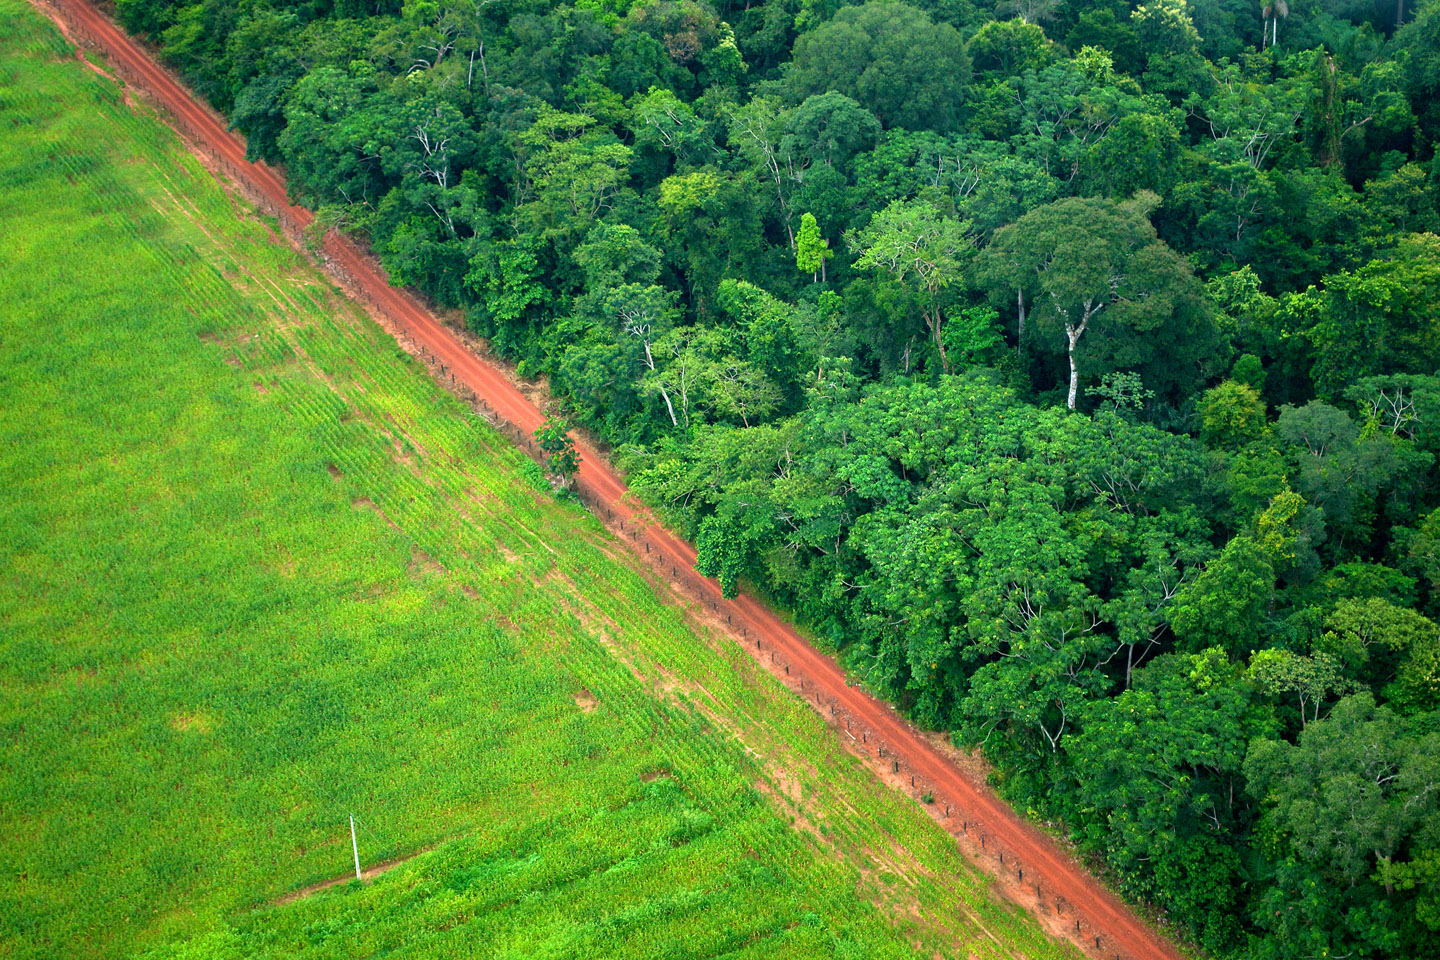 web-deforestation-brazil-kate-evans-for-center-for-international-forestry-research-cc.jpg